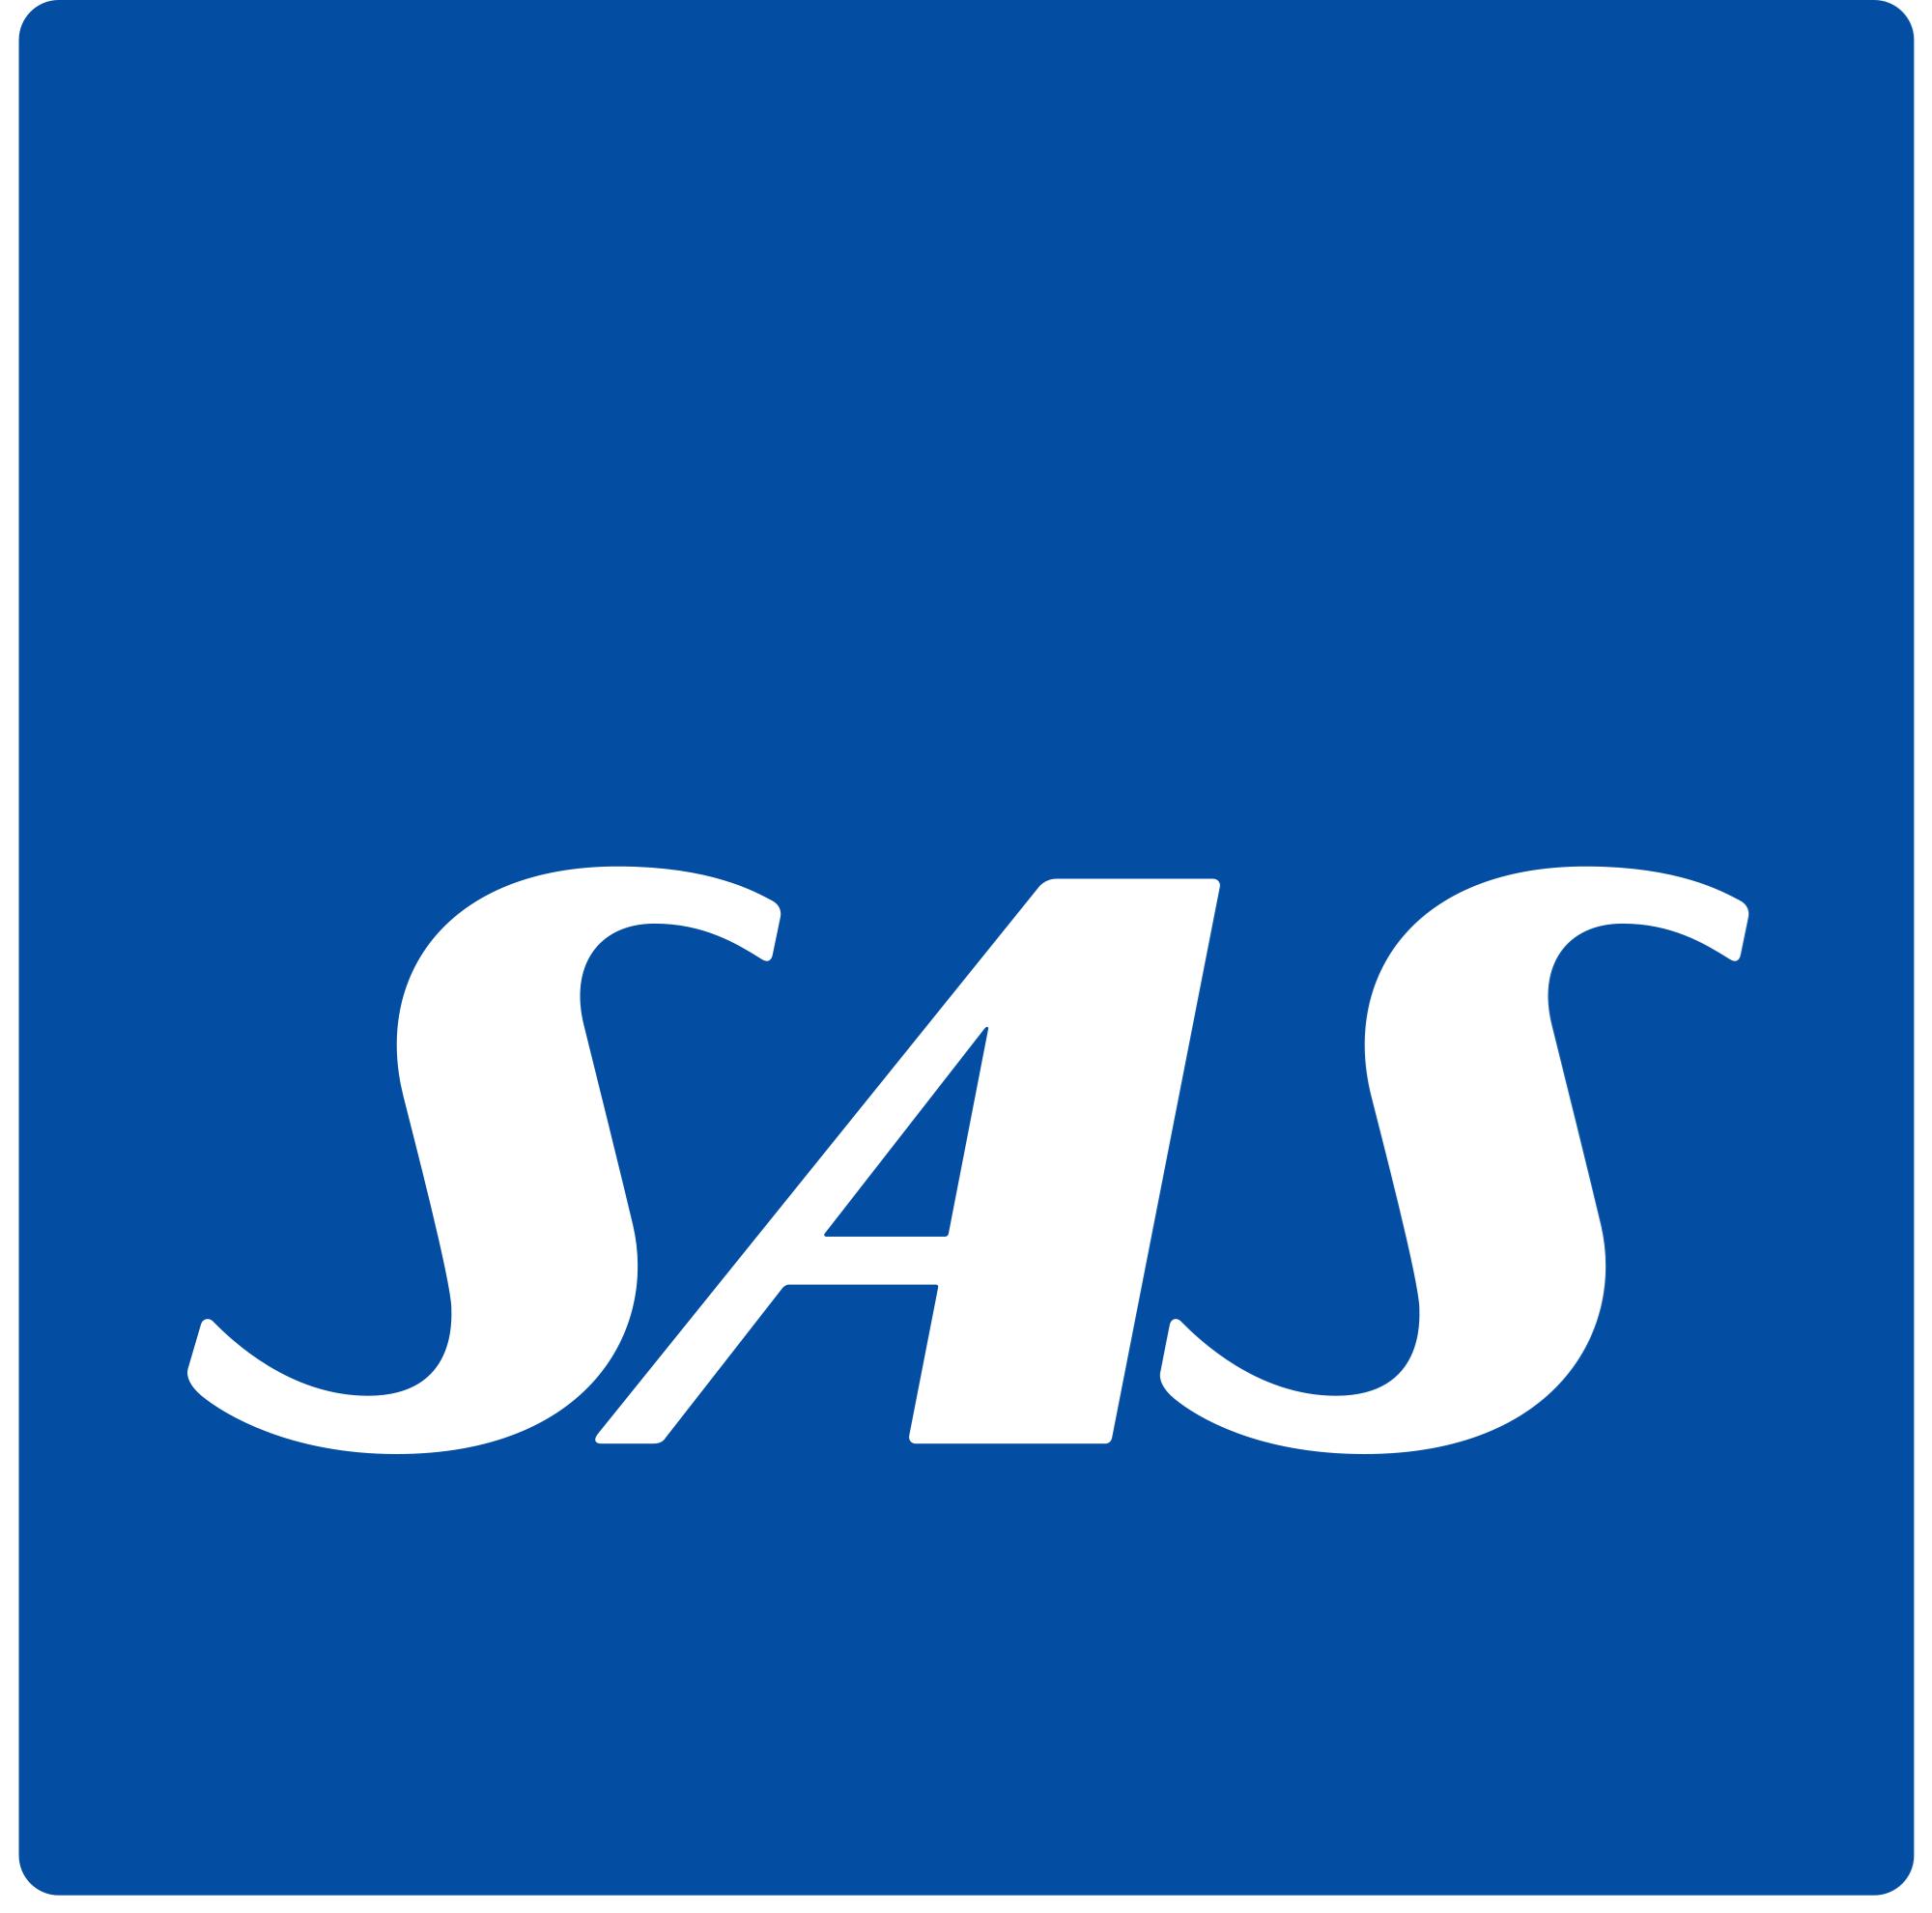 Logo of SAS